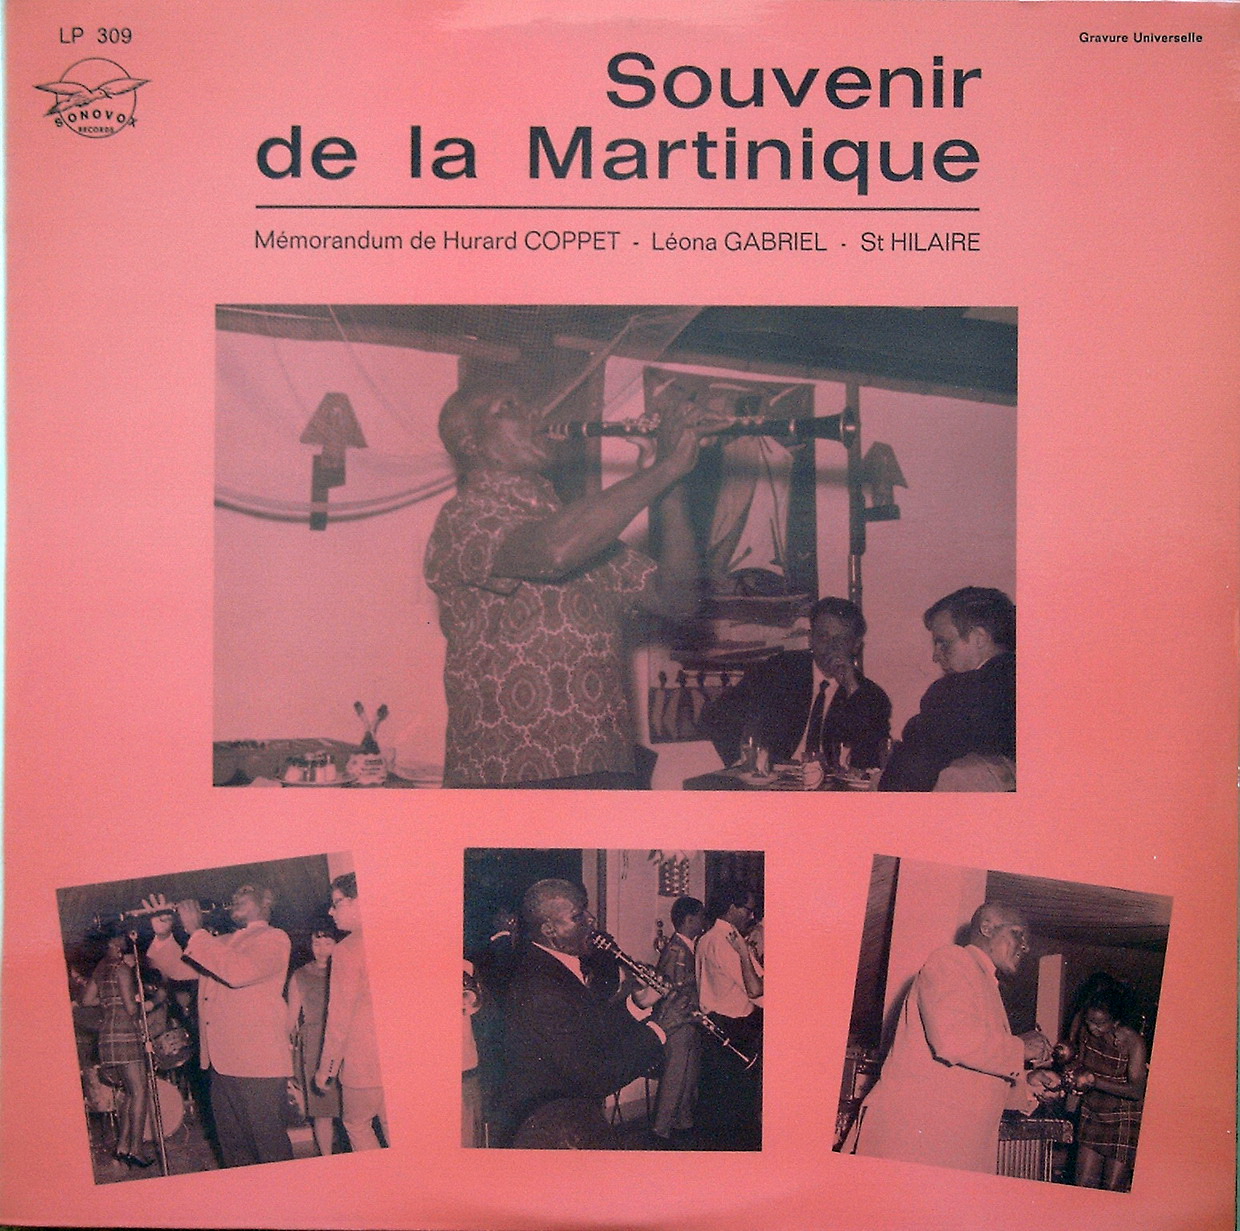 Hurard Coppet - Souvenir de la Martinique (1960) (Vinil rip) Lp+309